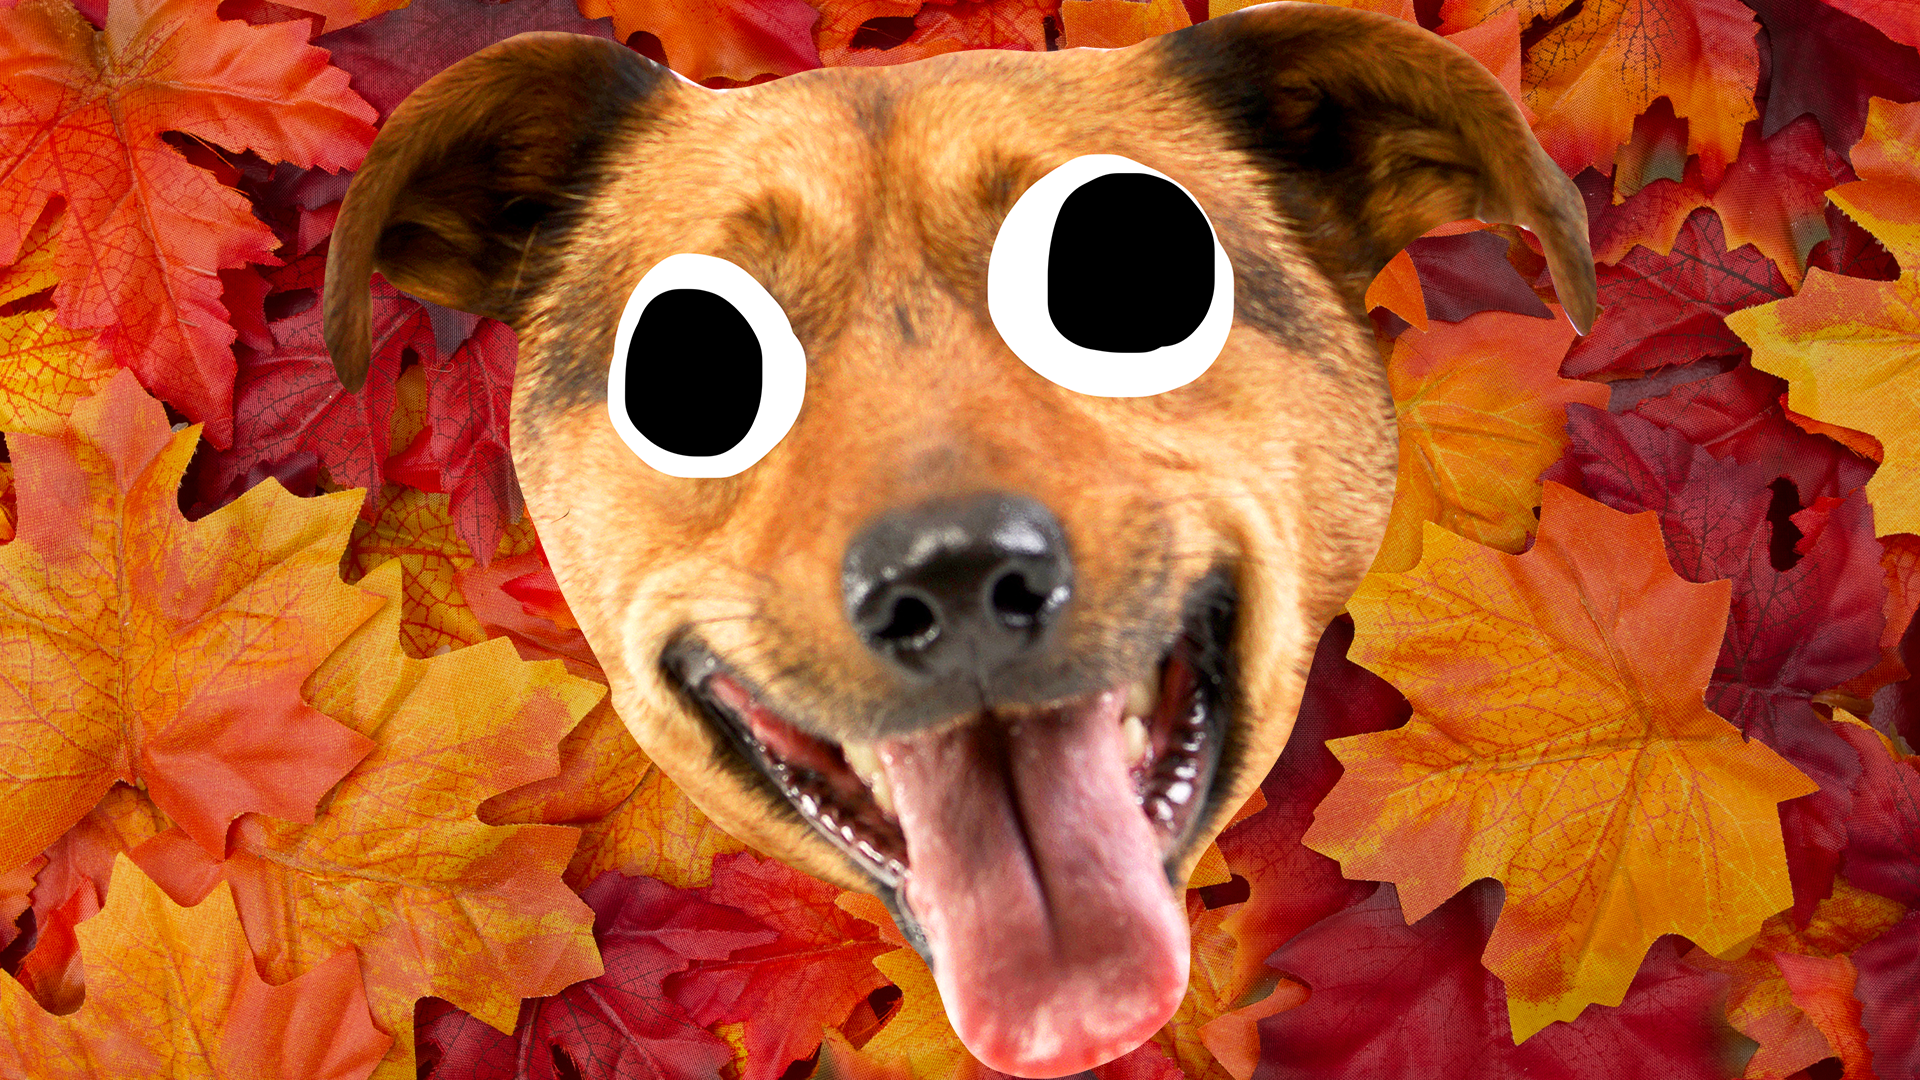 Goofy dog face on autumn leaf background